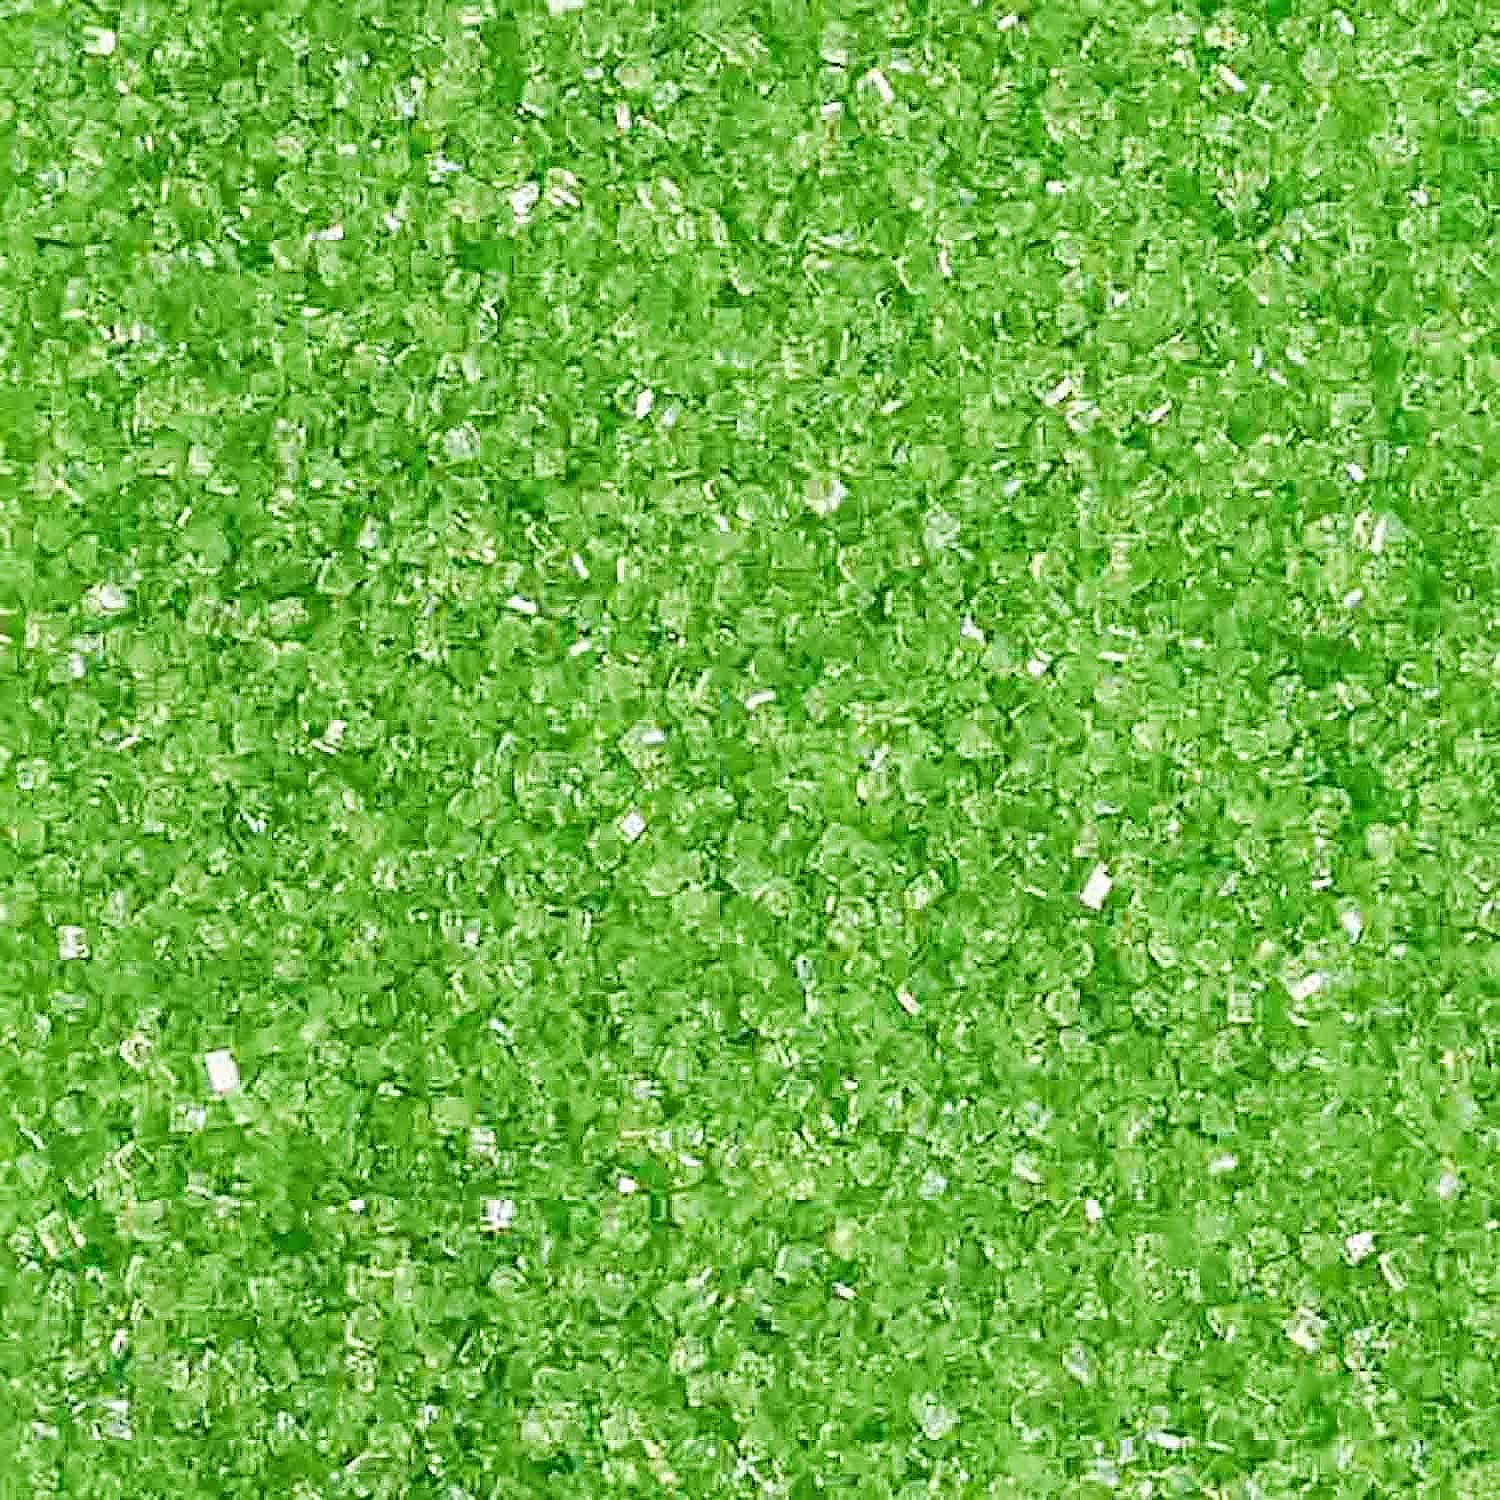 Lime Green Sanding Sugar - Celebakes